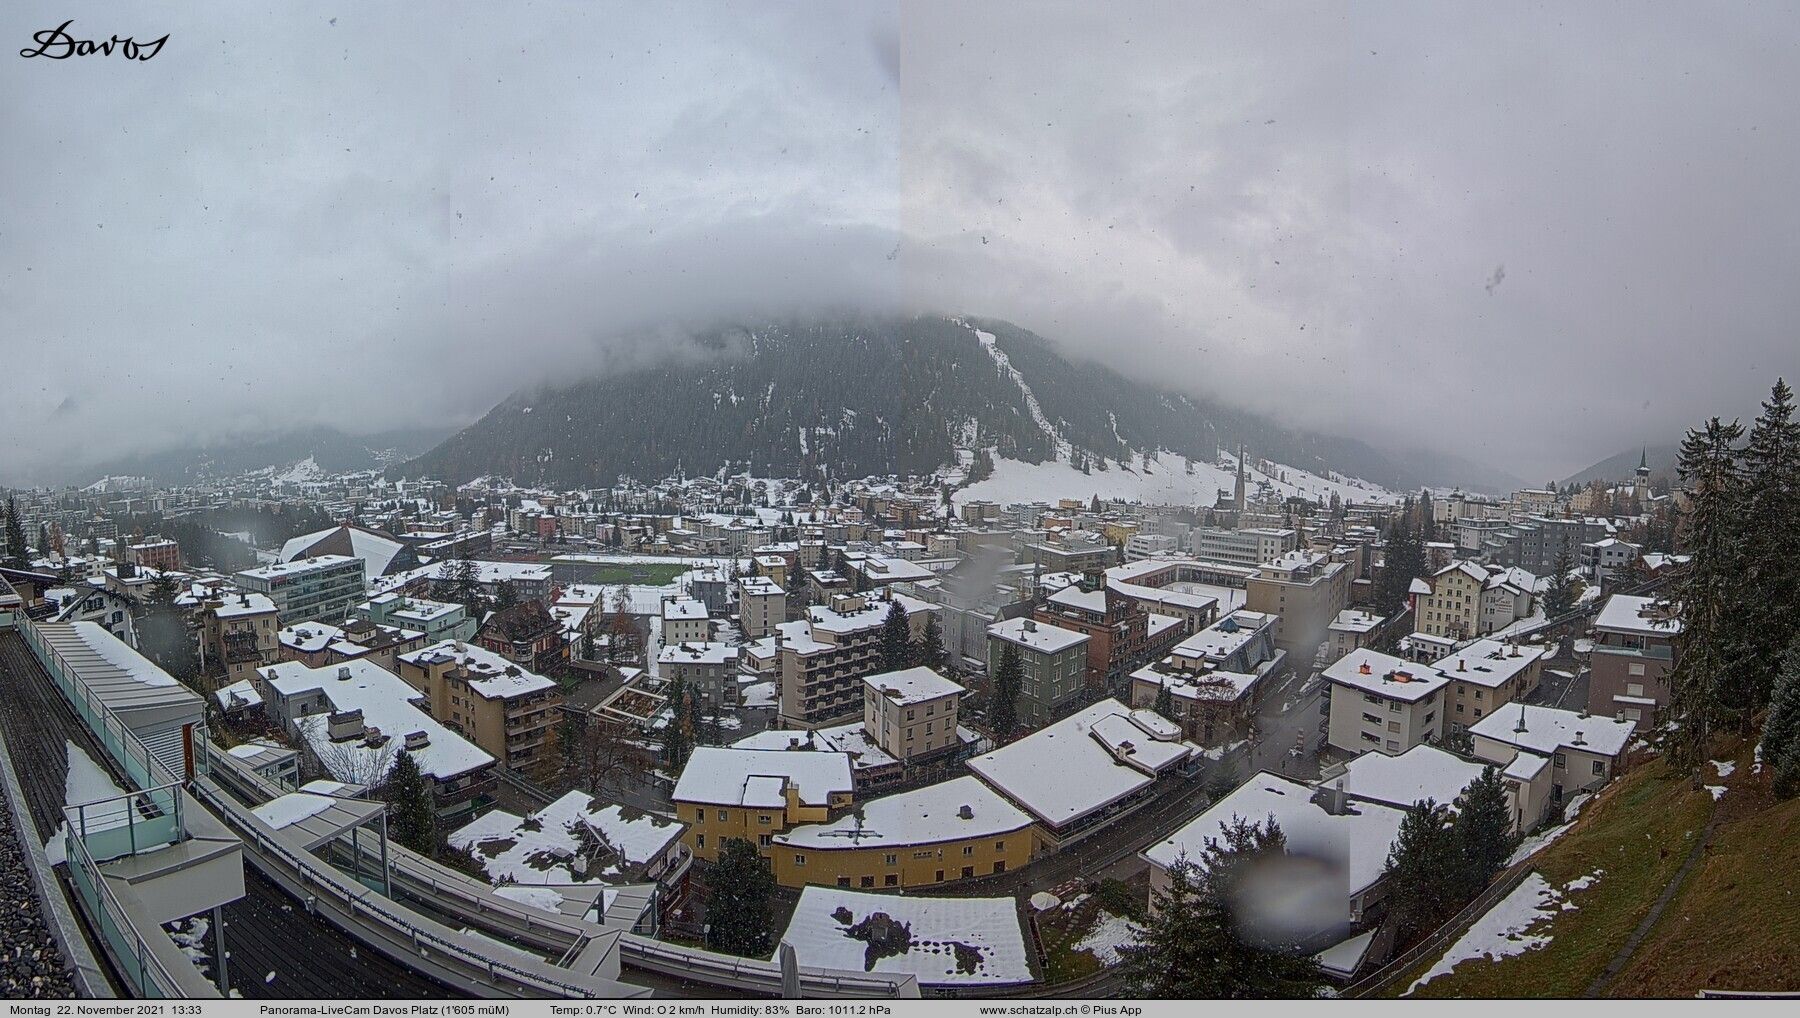 Light snowfall in Davos today (schatzalp.ch)